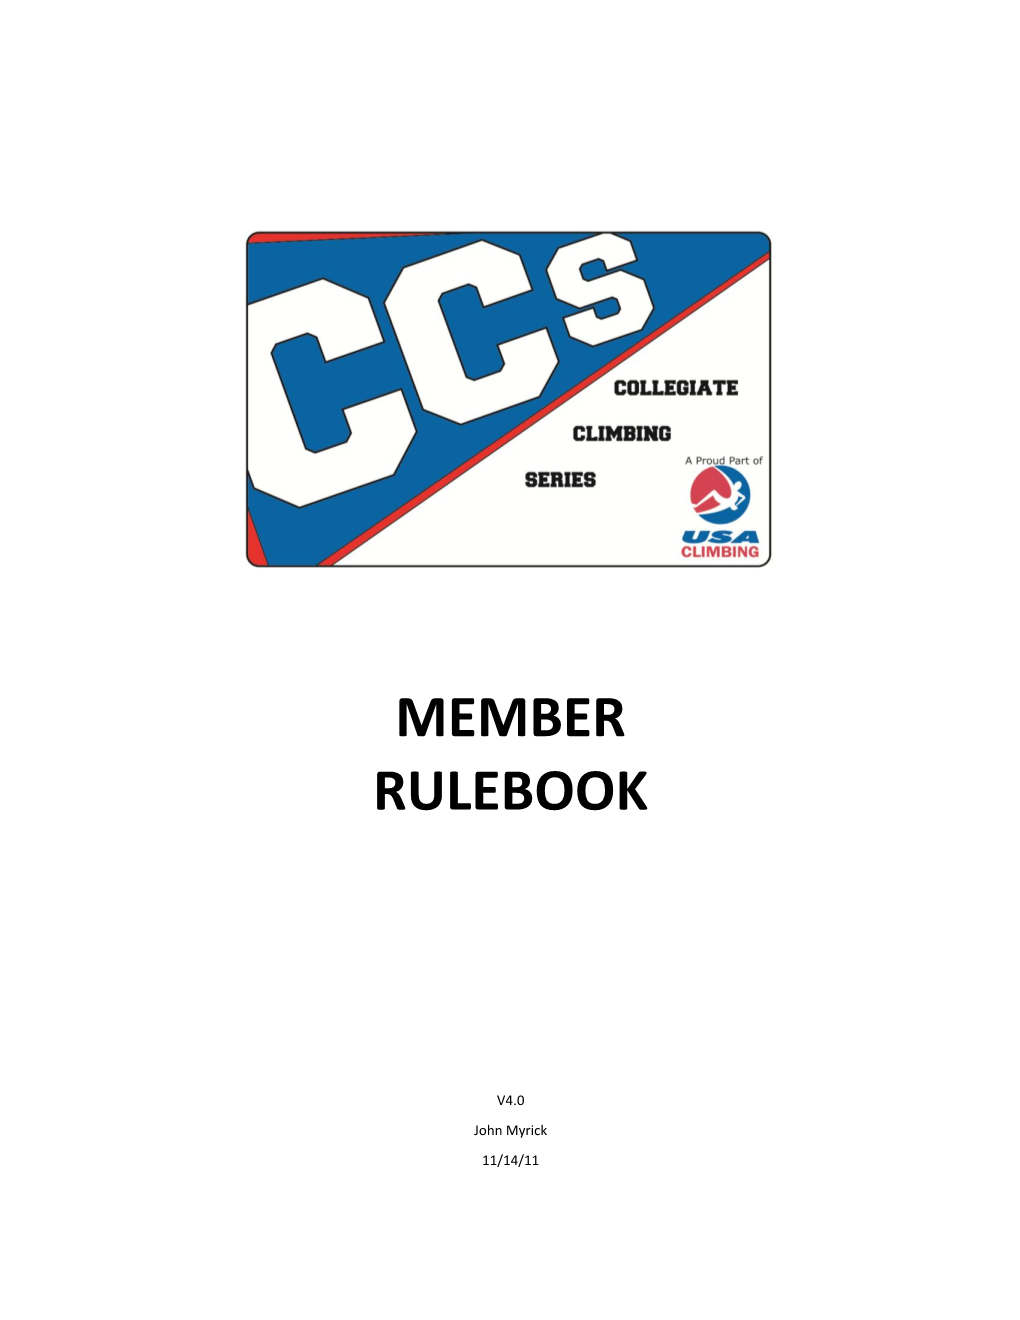 Member Rulebook